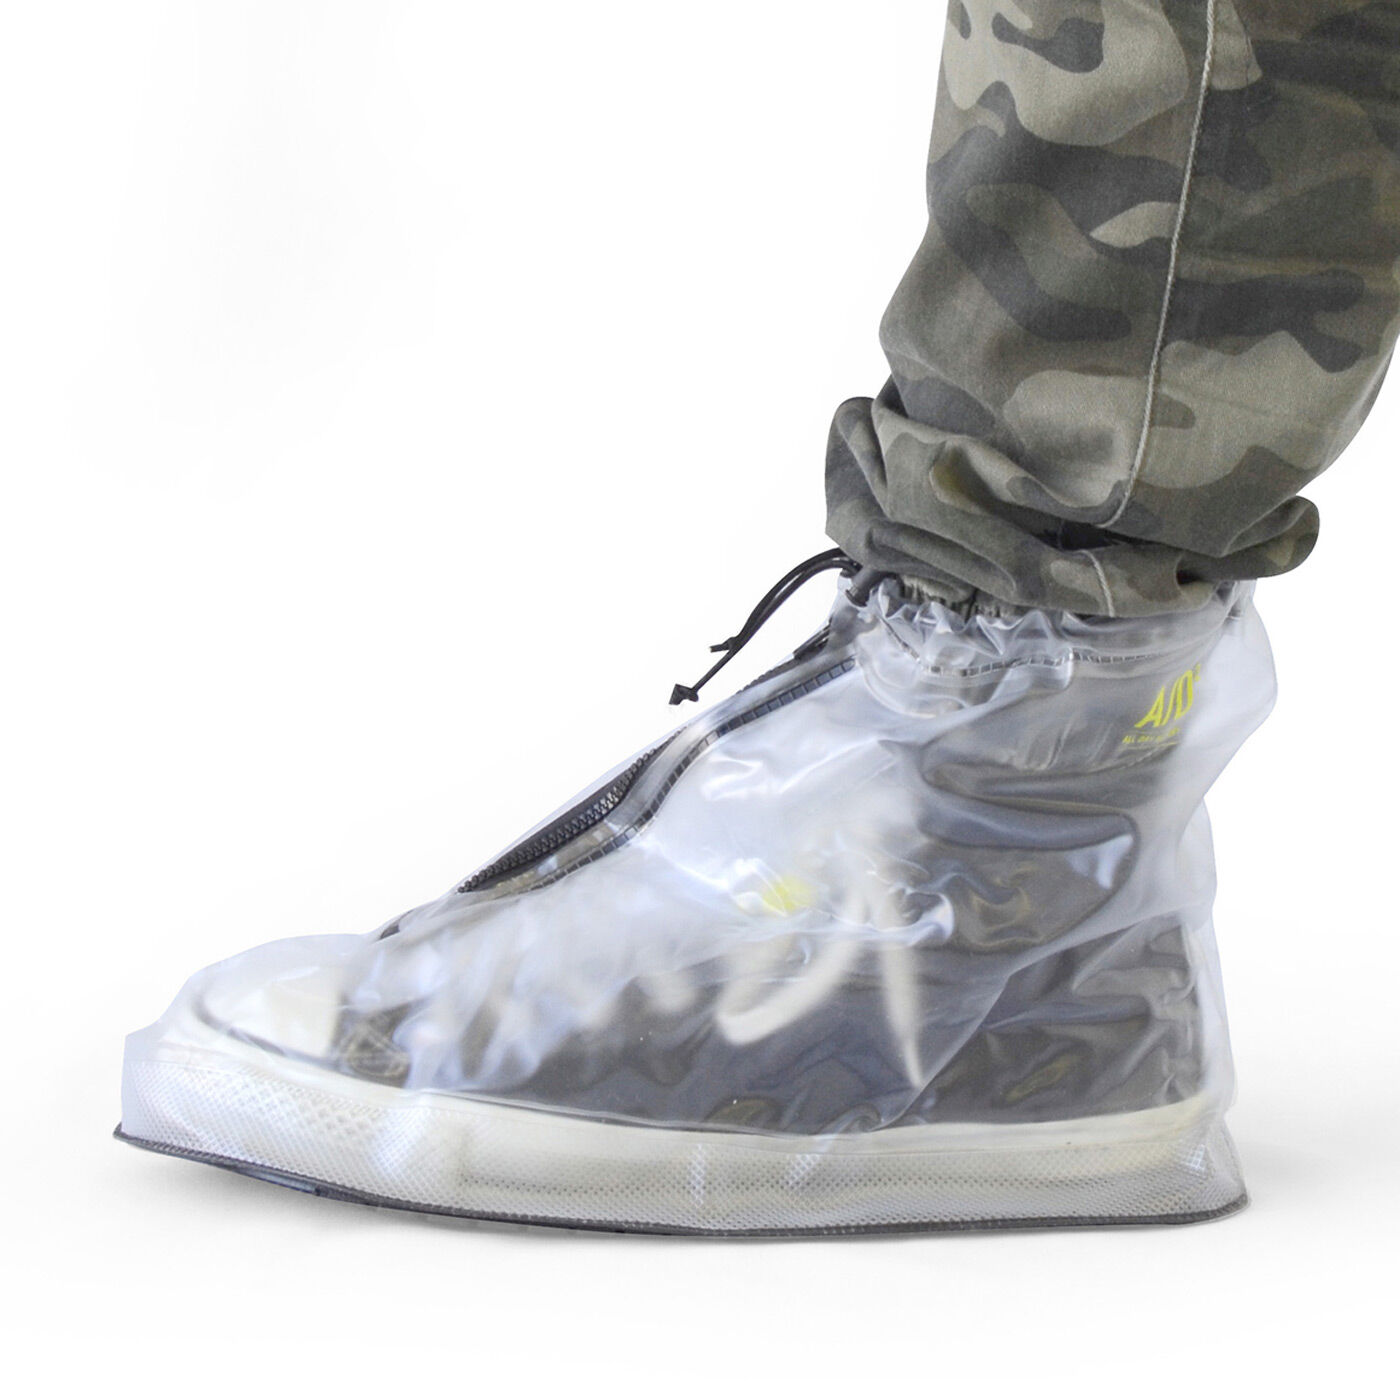 Real Stock|靴を雨や泥から守る　たたんで持ち歩けるシューズレインカバー〈透明〉|パンツのすそも入れられます。